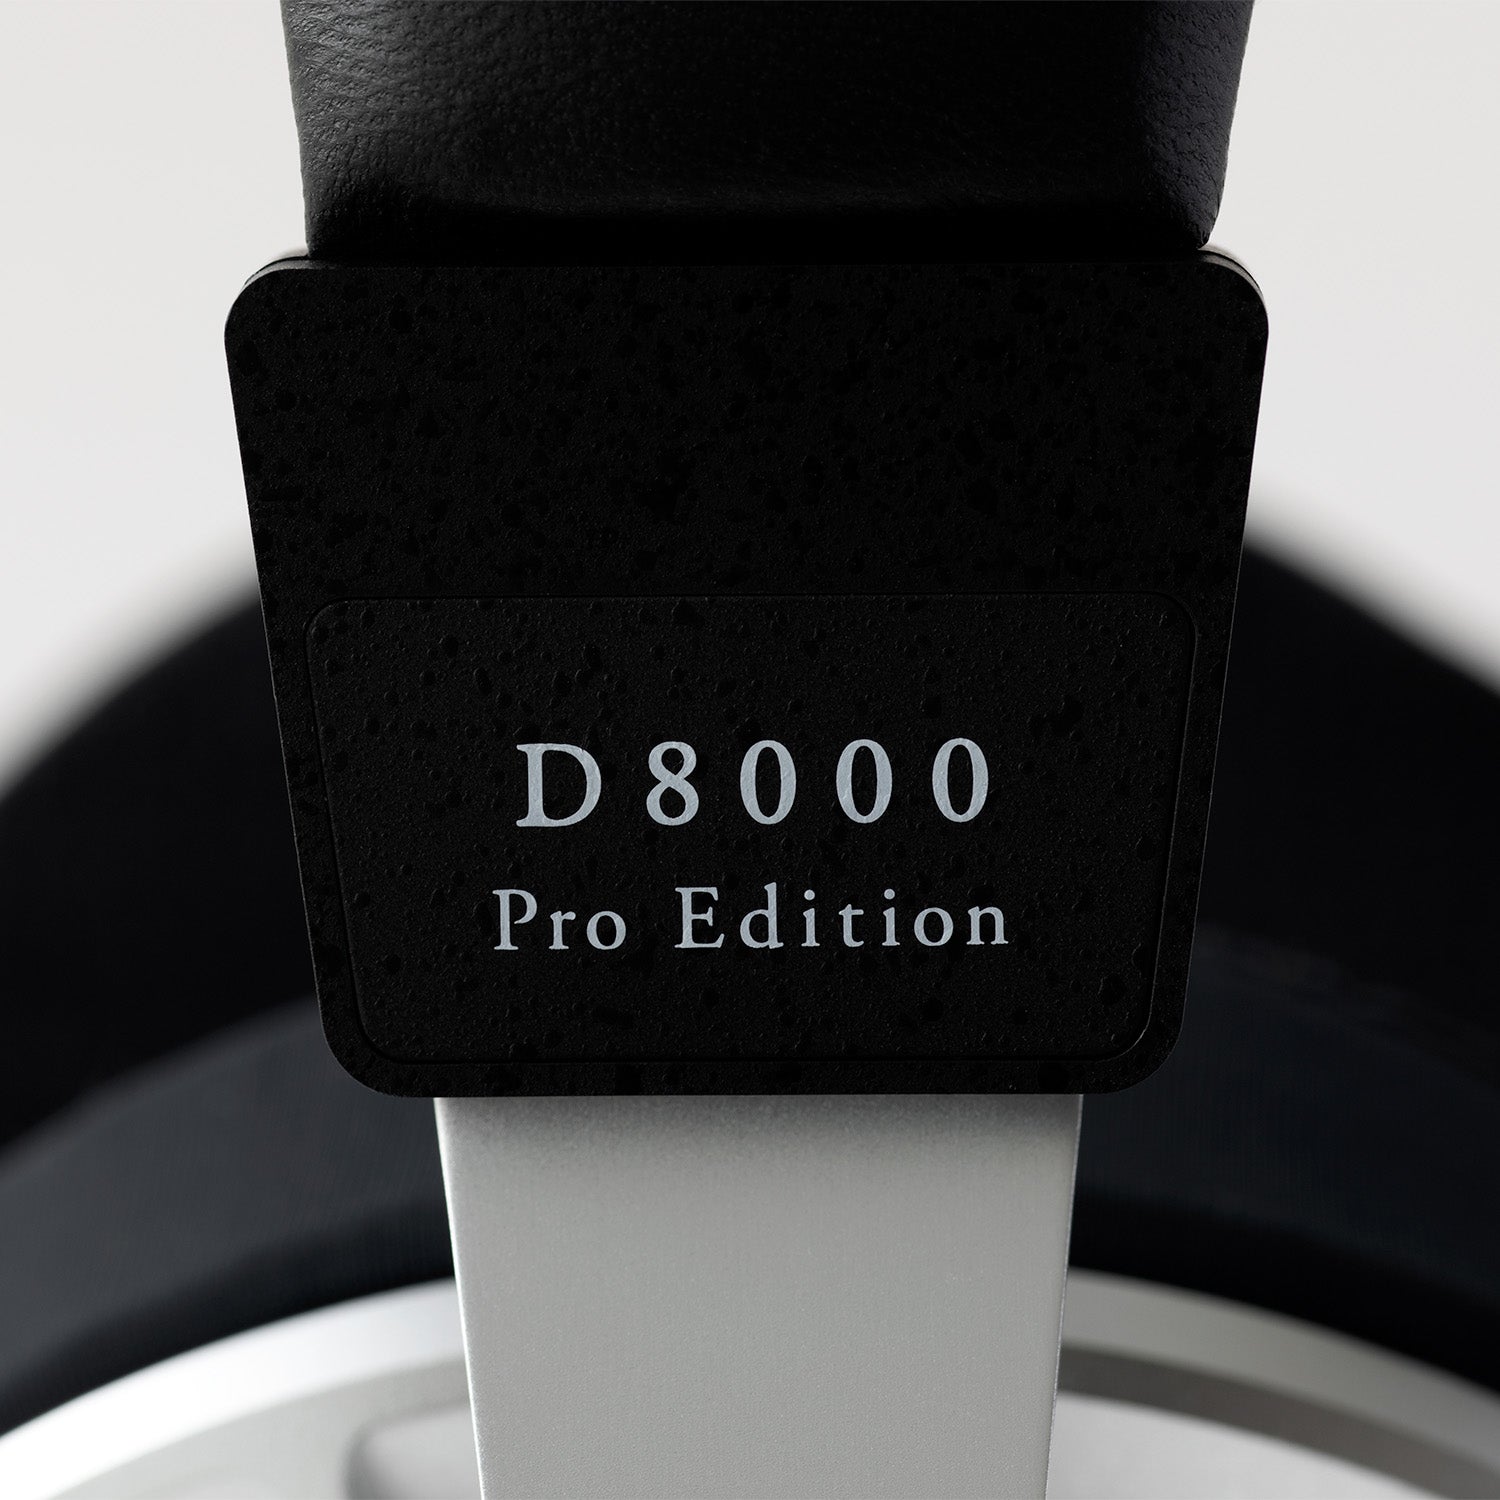 D8000 Pro Edition